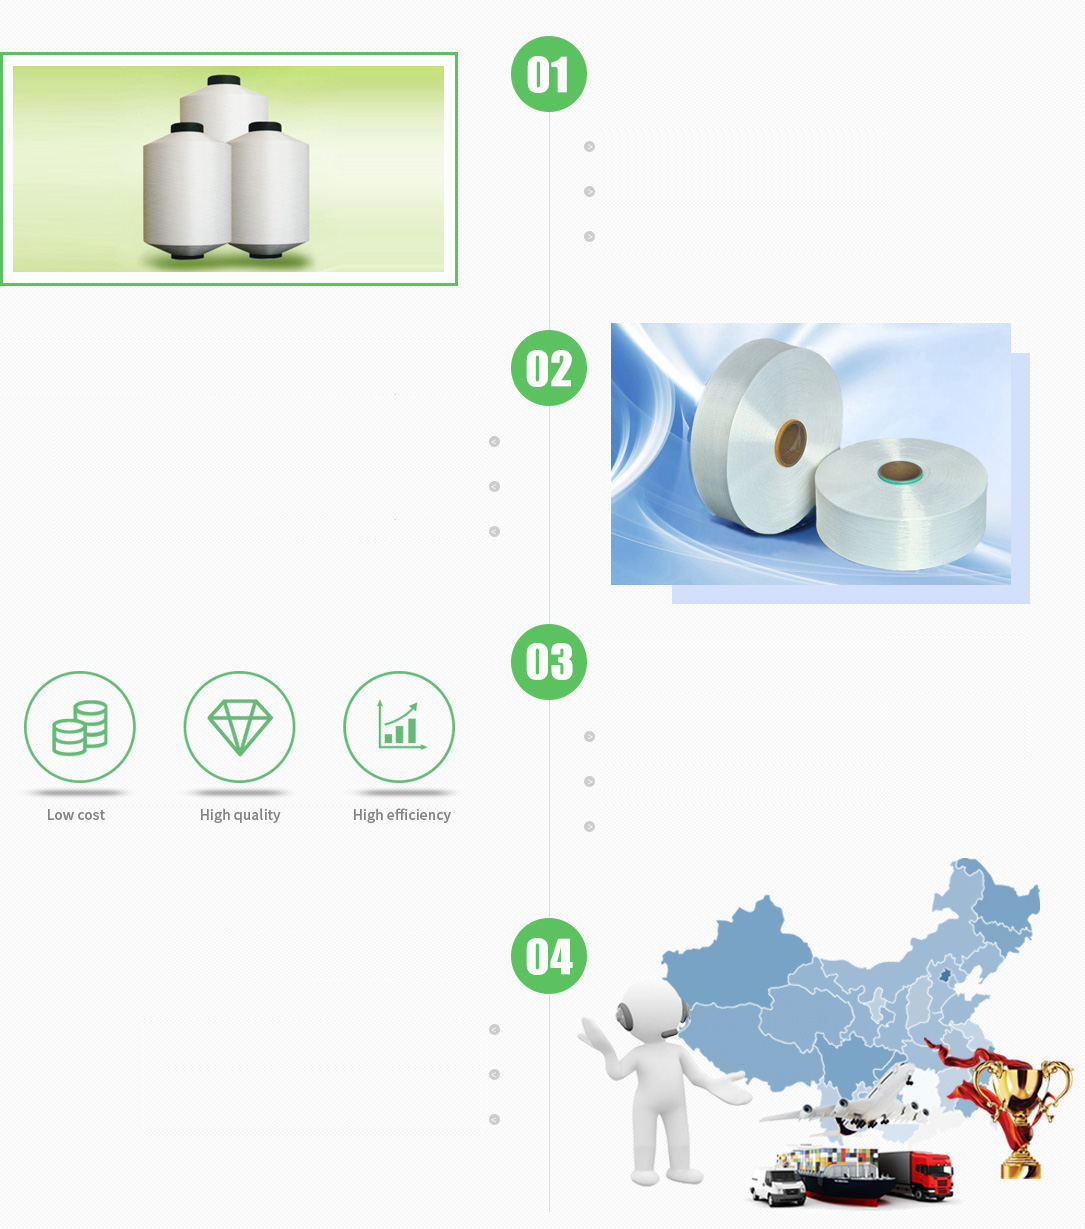 Jiangsu yongyin chemical fiber co. LTD